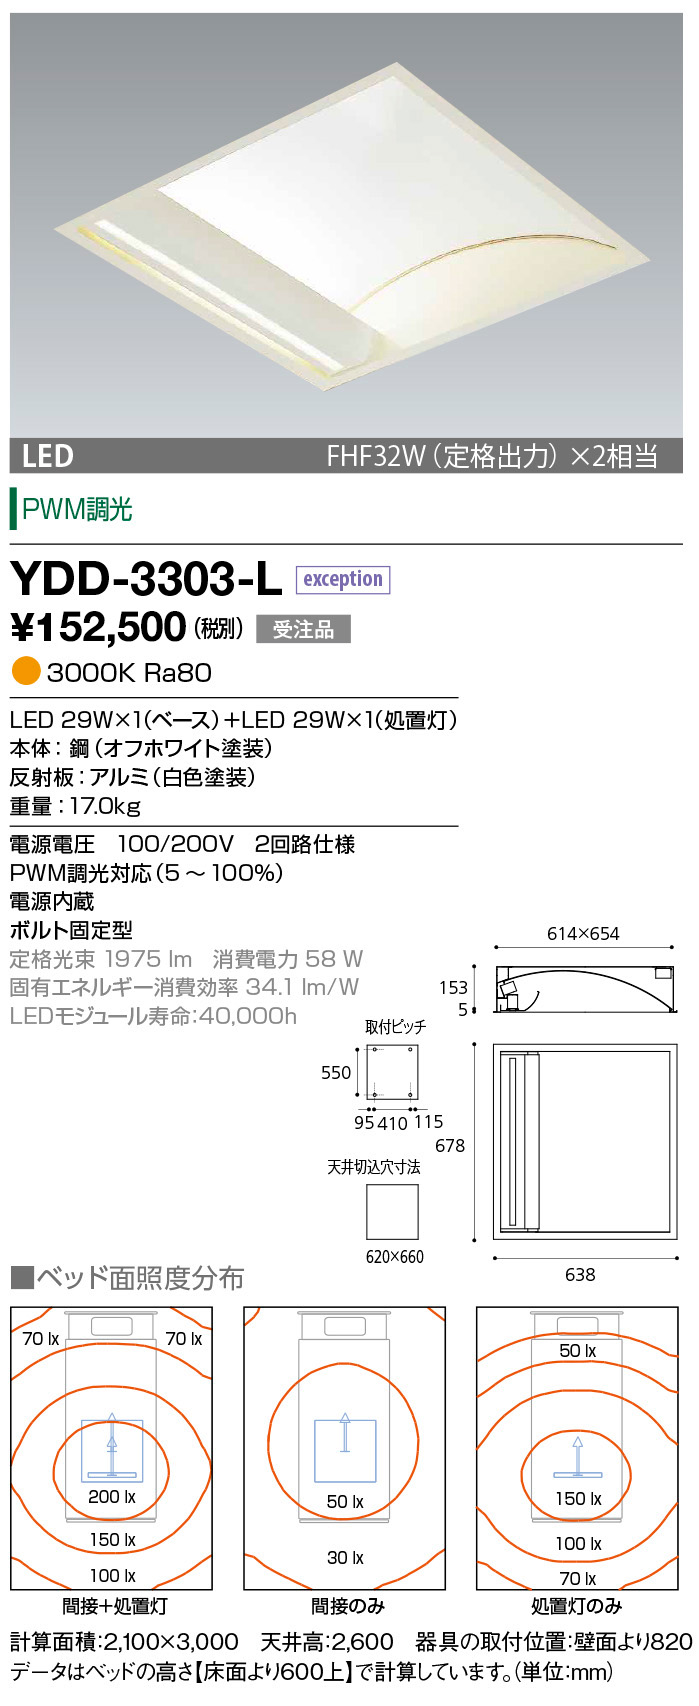 YDD-3303-L